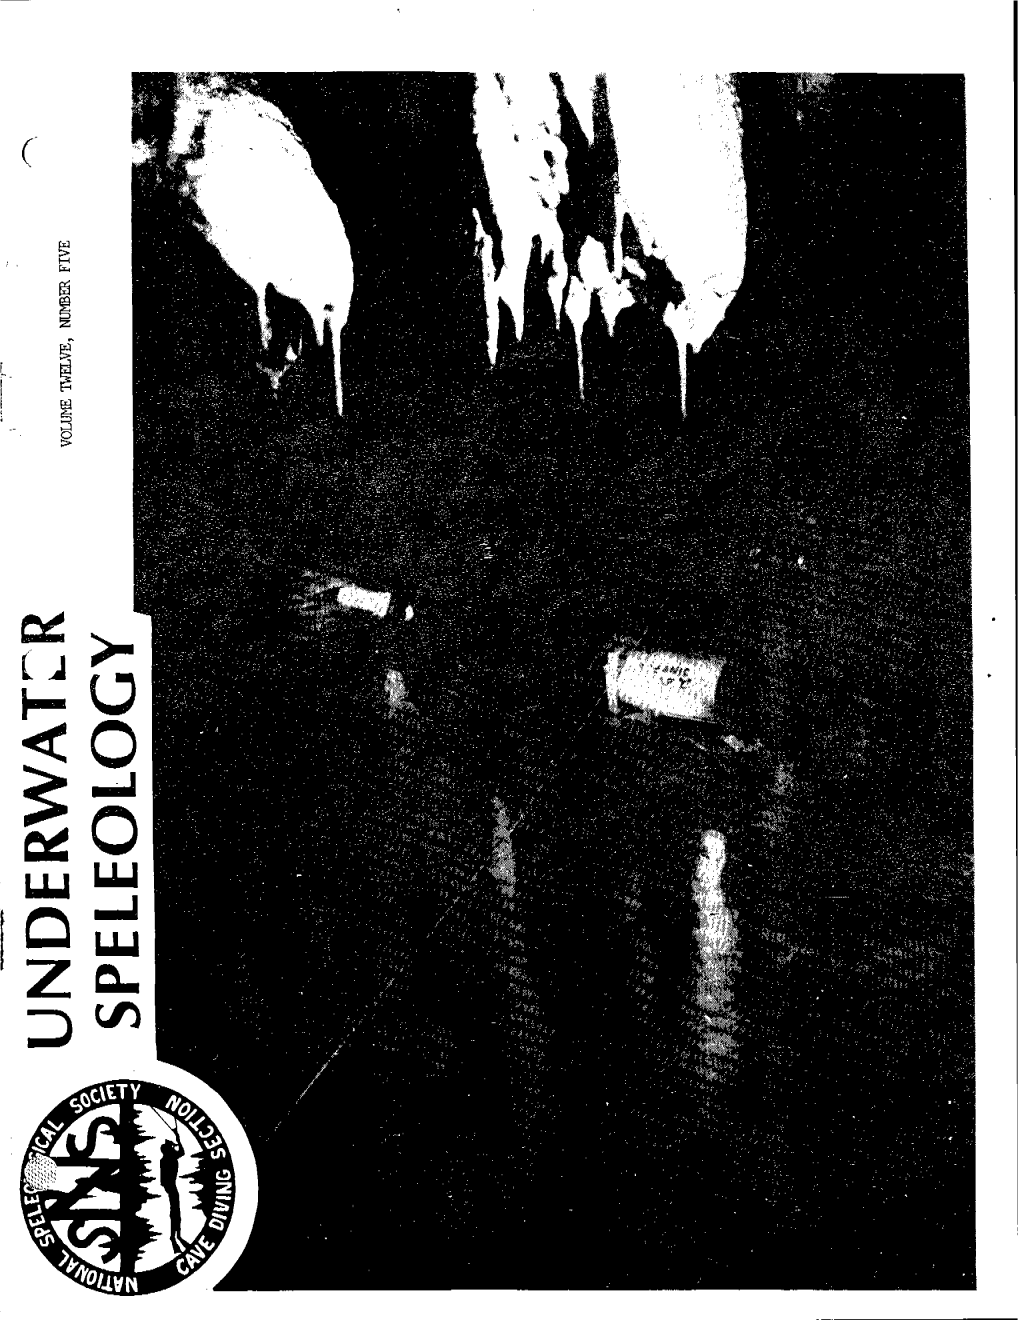 Volume 12 Number 5, October 1985